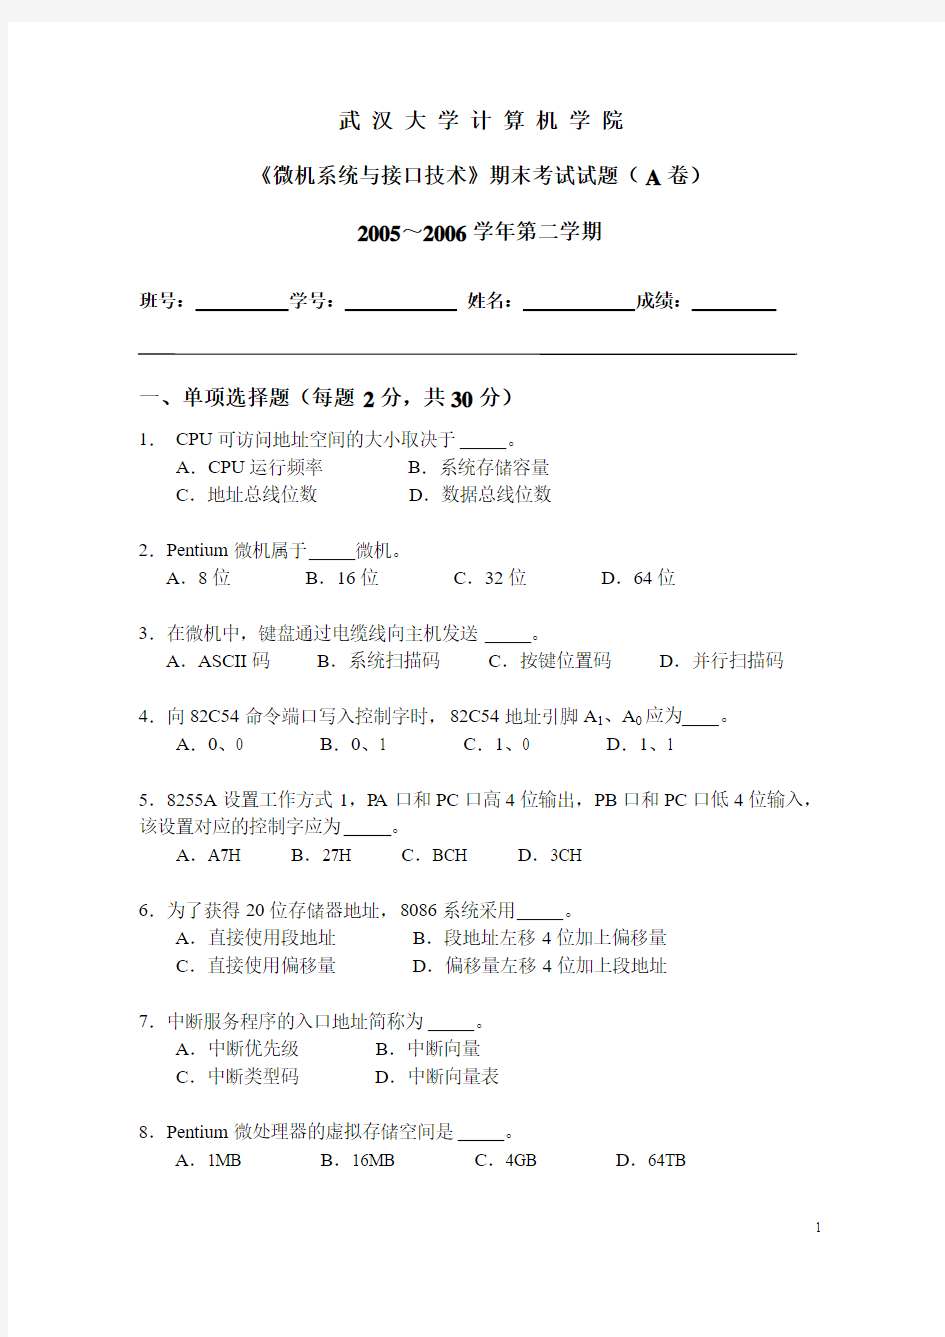 武汉大学计算机学院微机接口05~06第二学期试题及答案